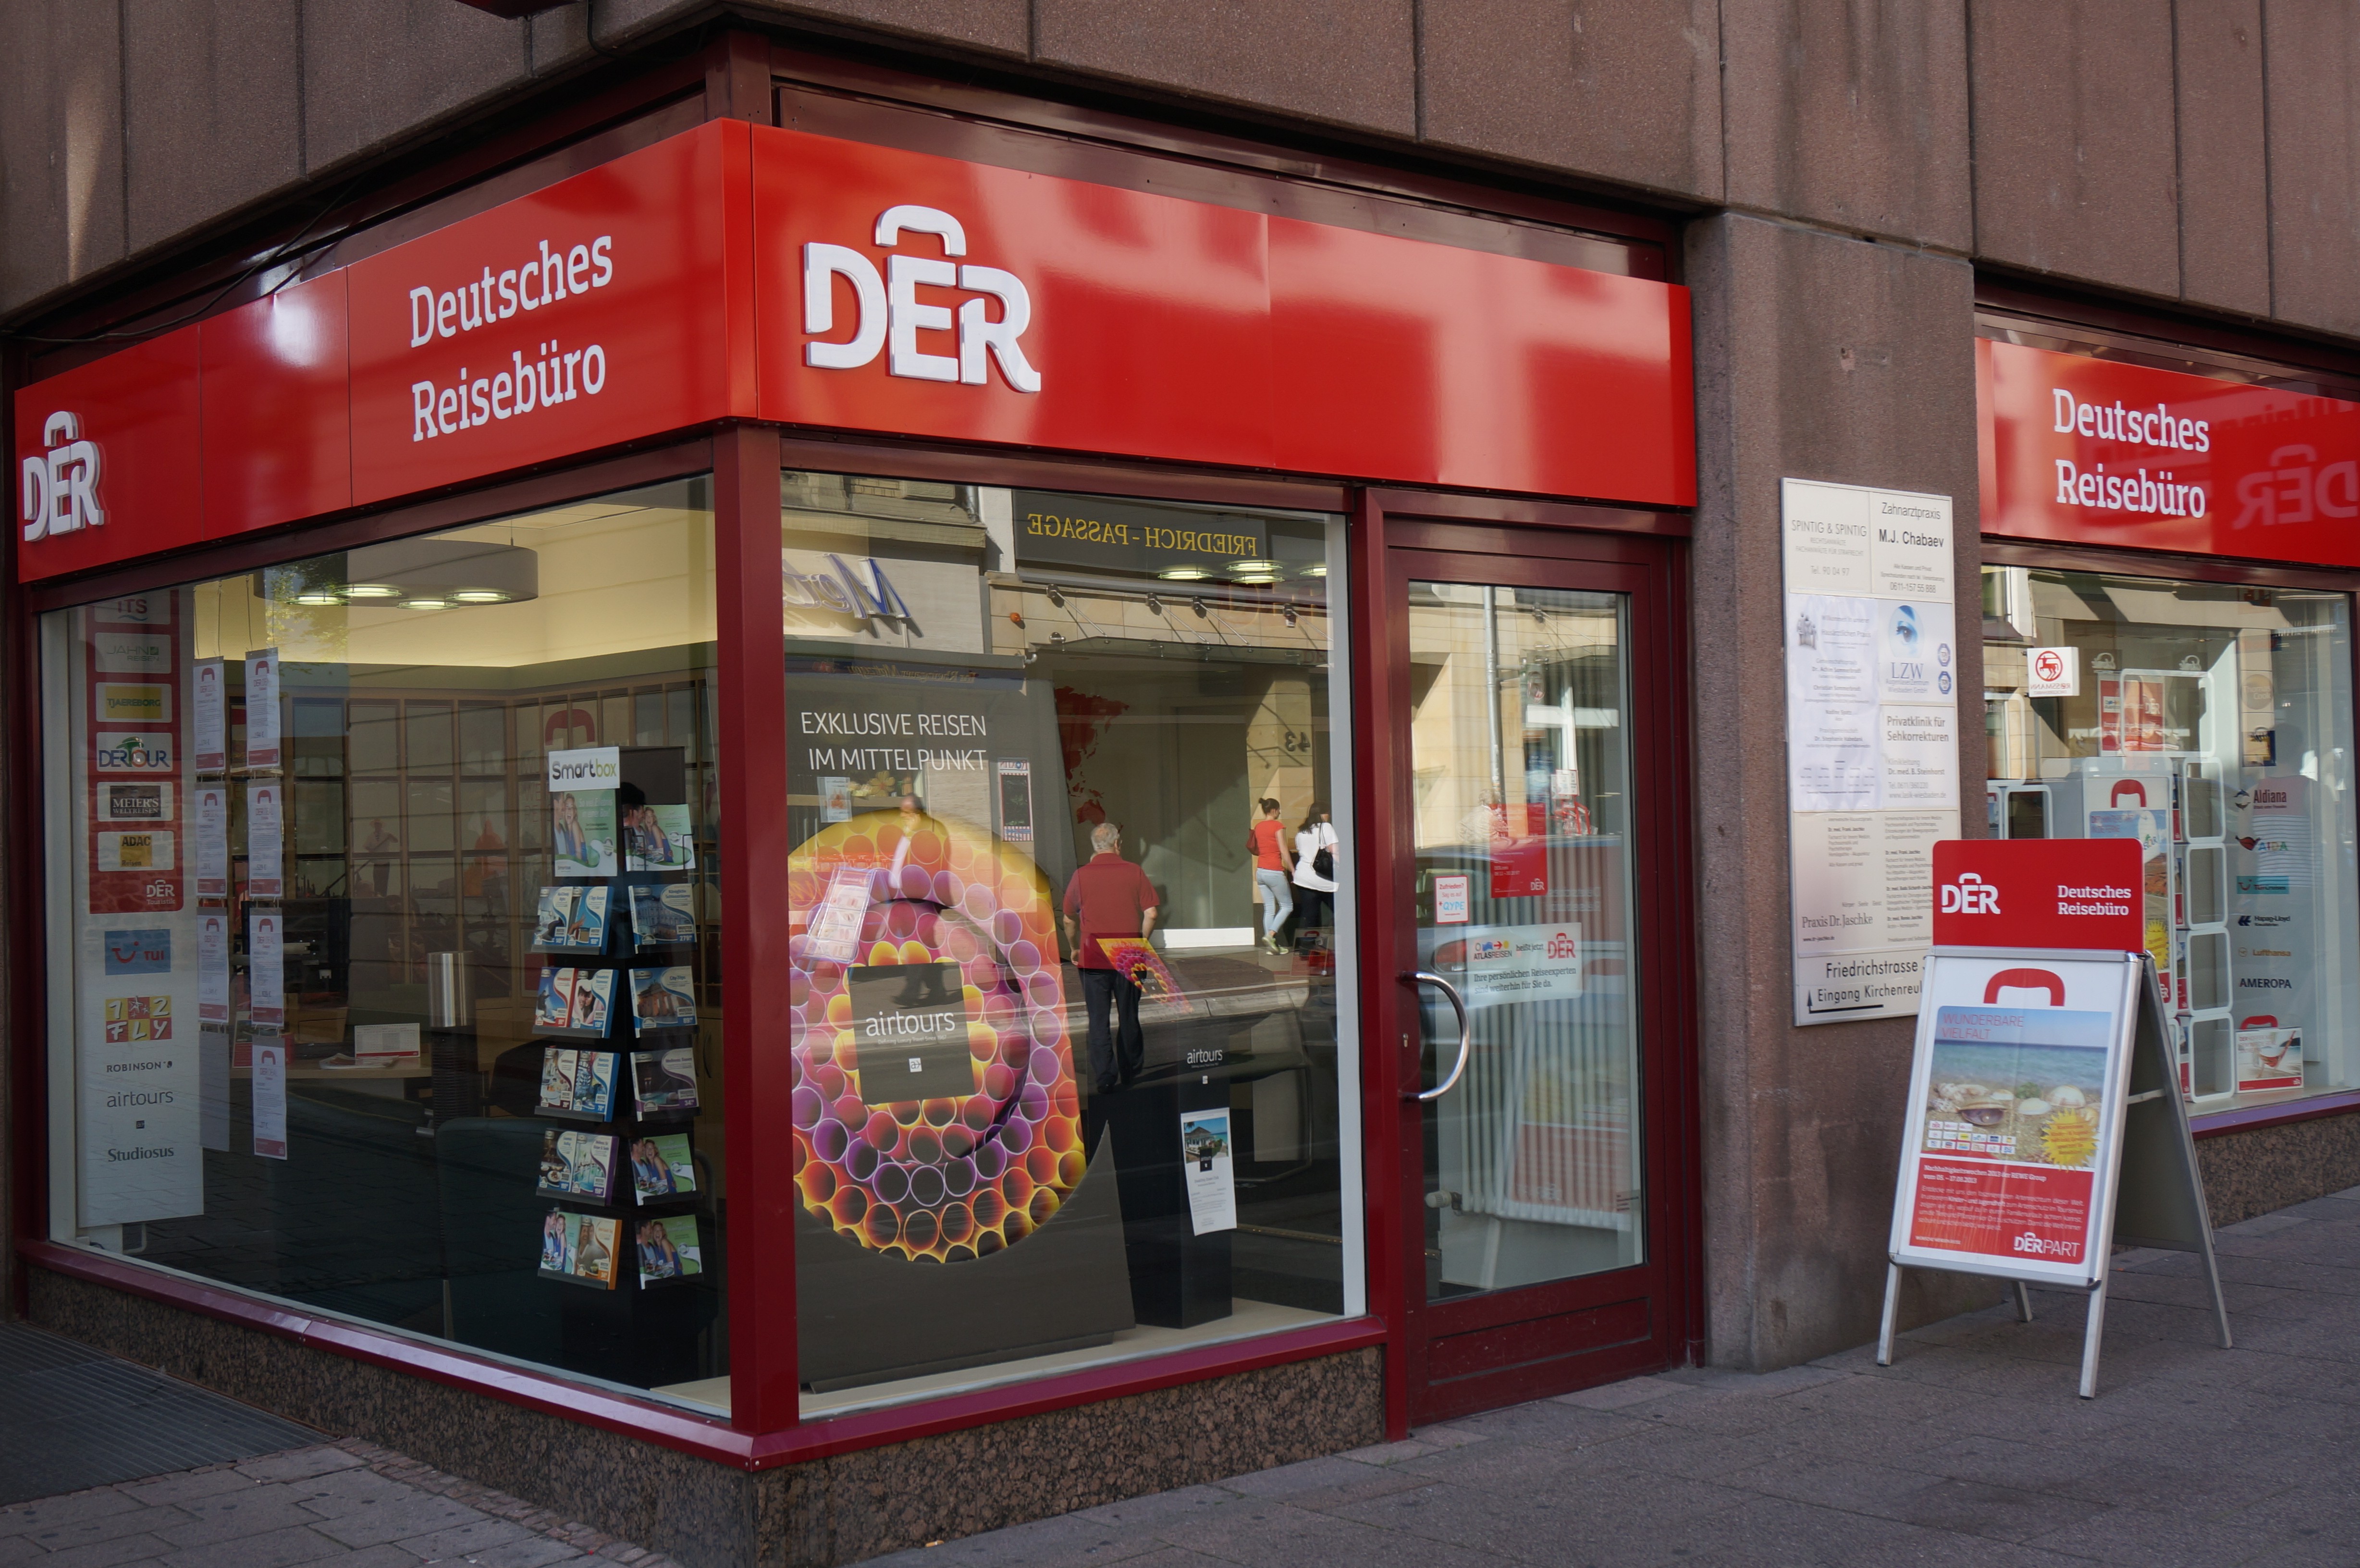 DERTOUR Reisebüro, Friedrichstraße 34 in Wiesbaden